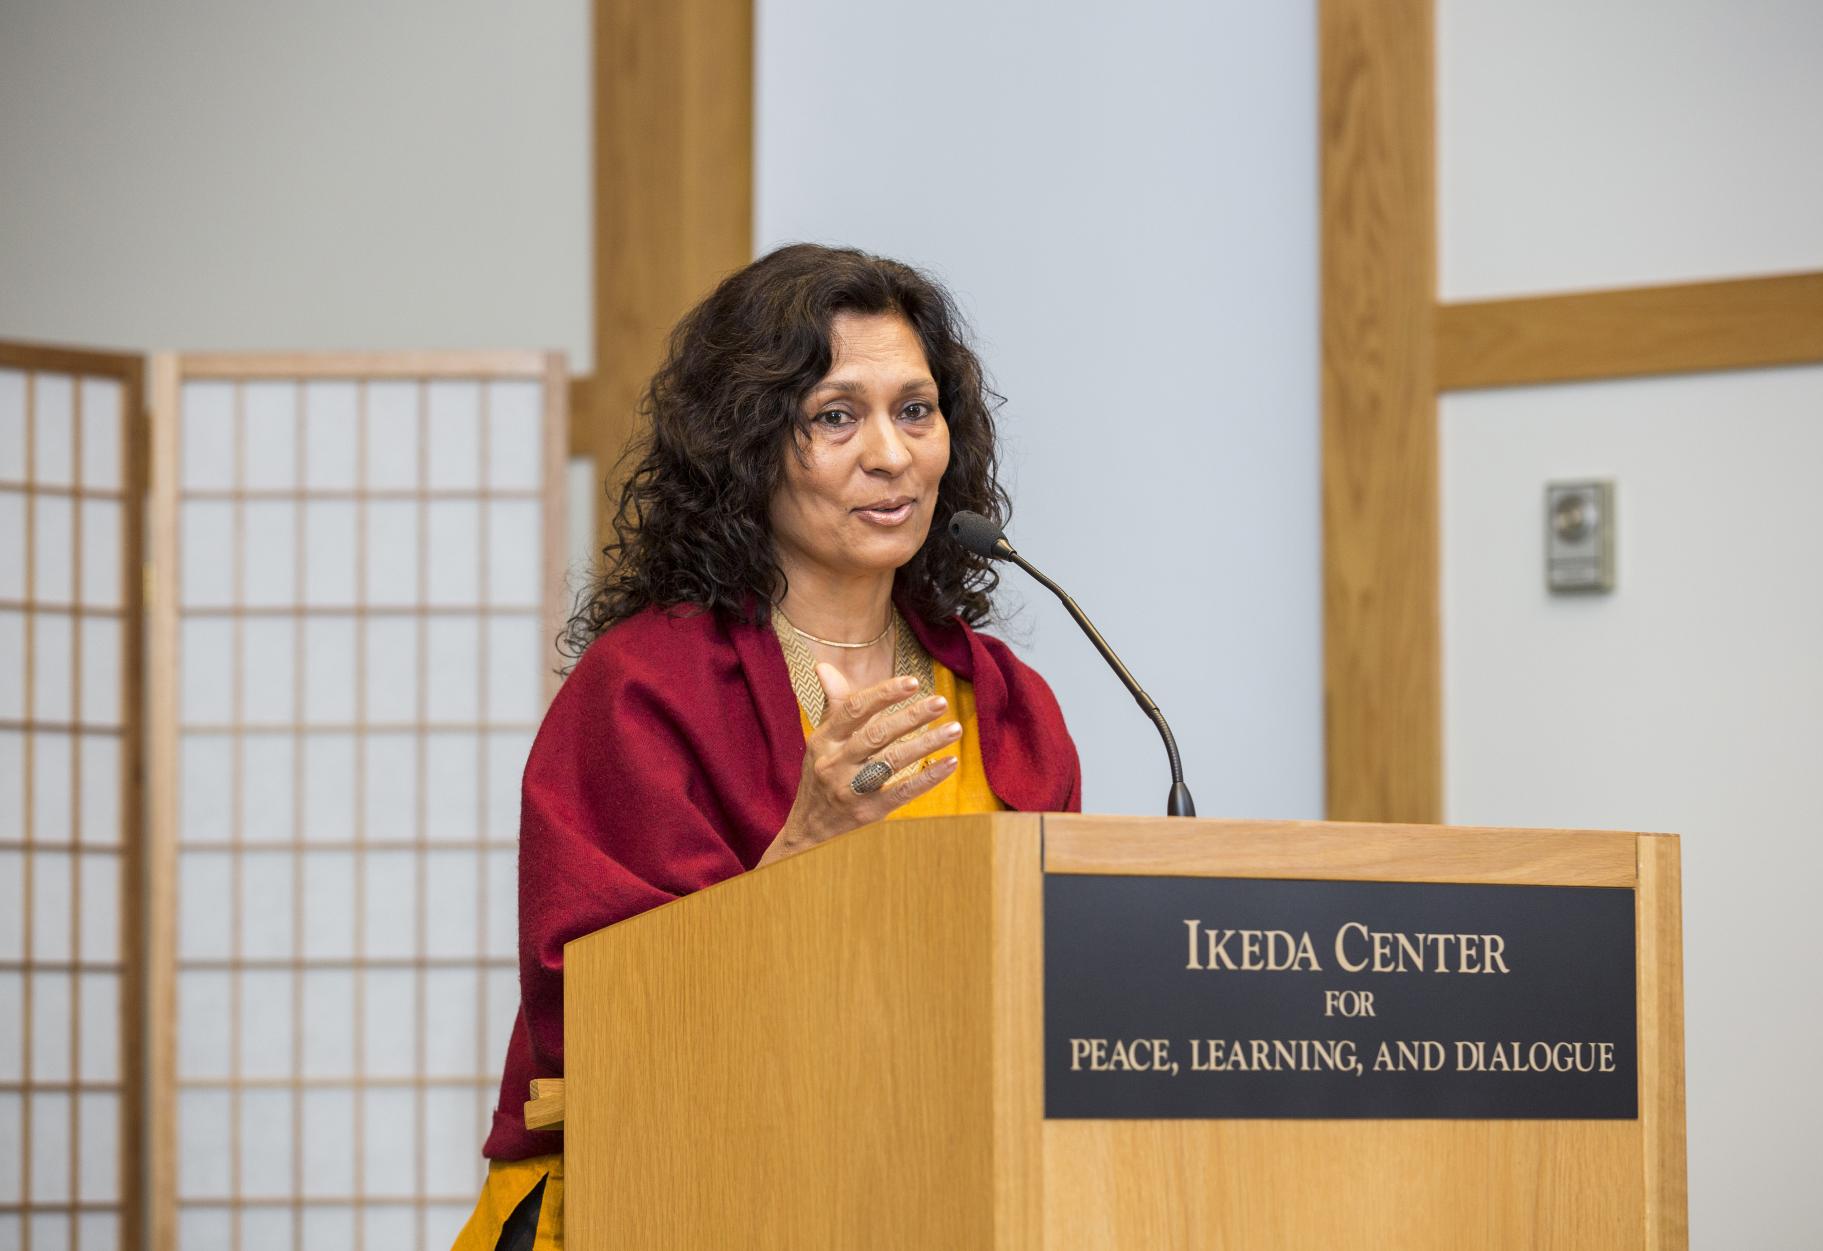 2015 Ikeda Forum speaker Meenakshi Chhabra at the podium